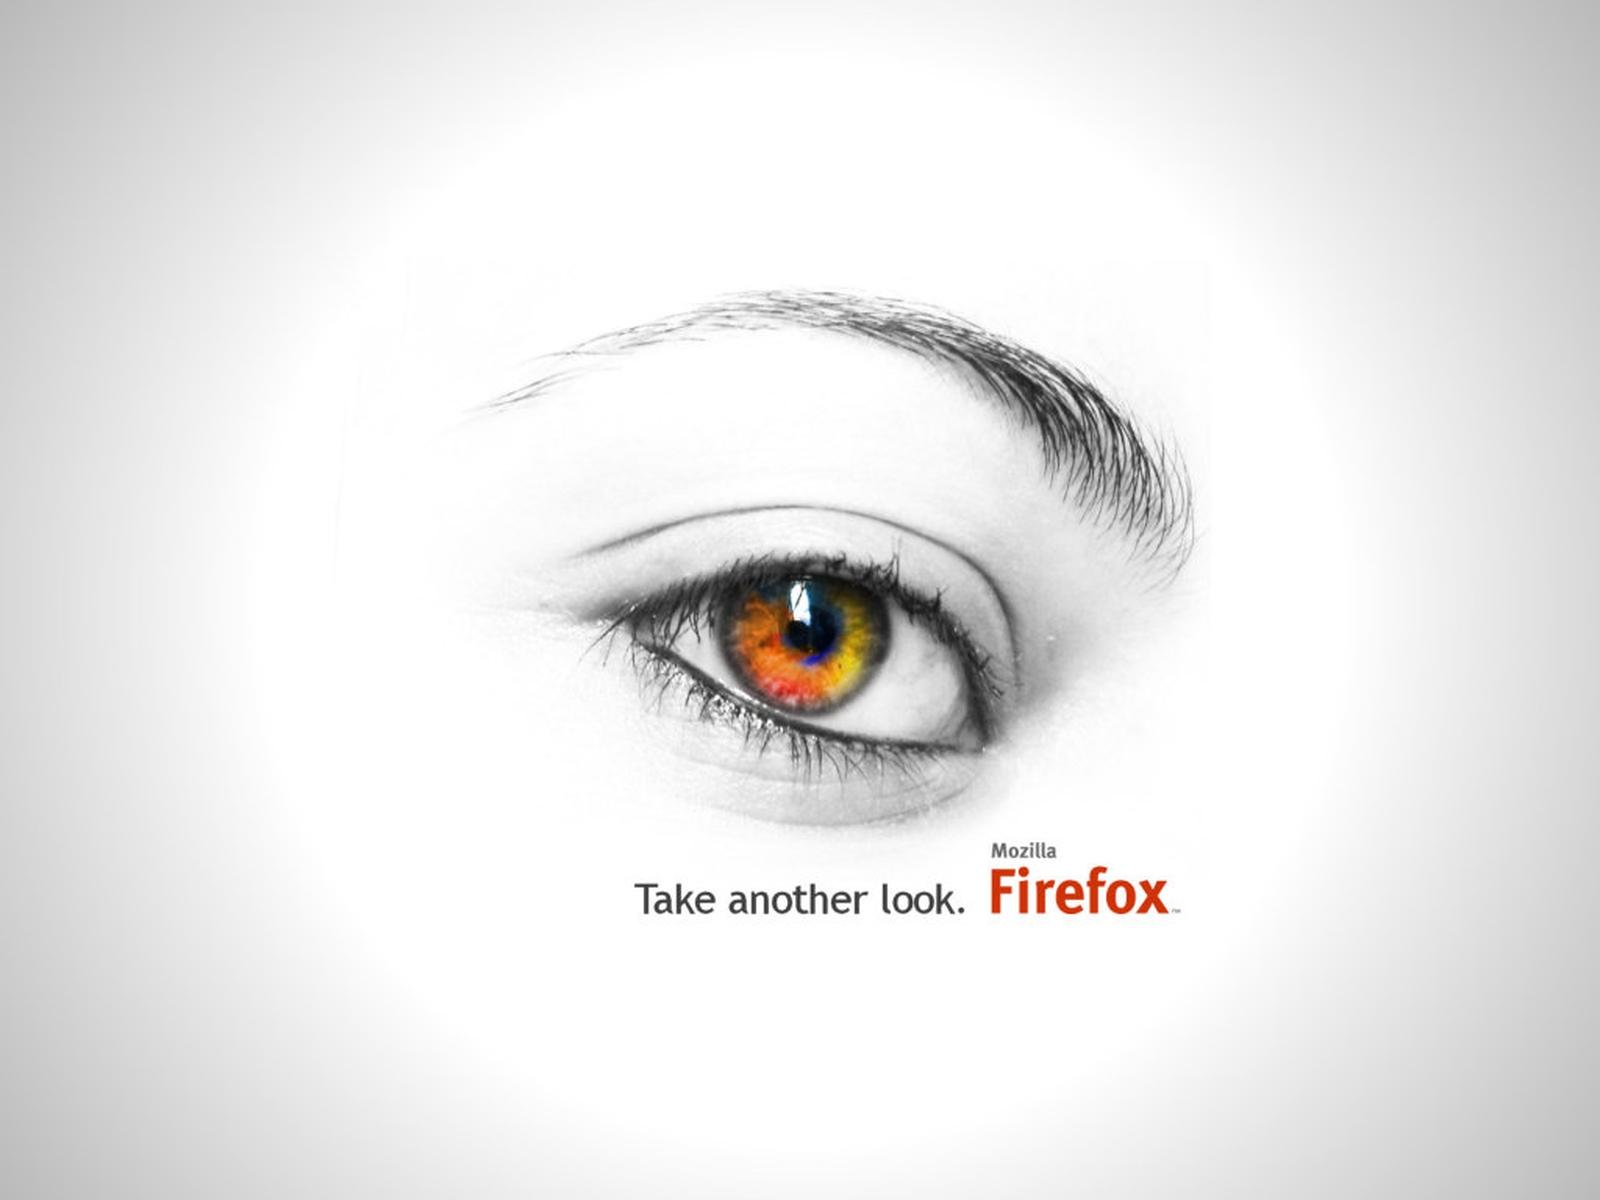 Fond d'ecran Take another Look FireFox